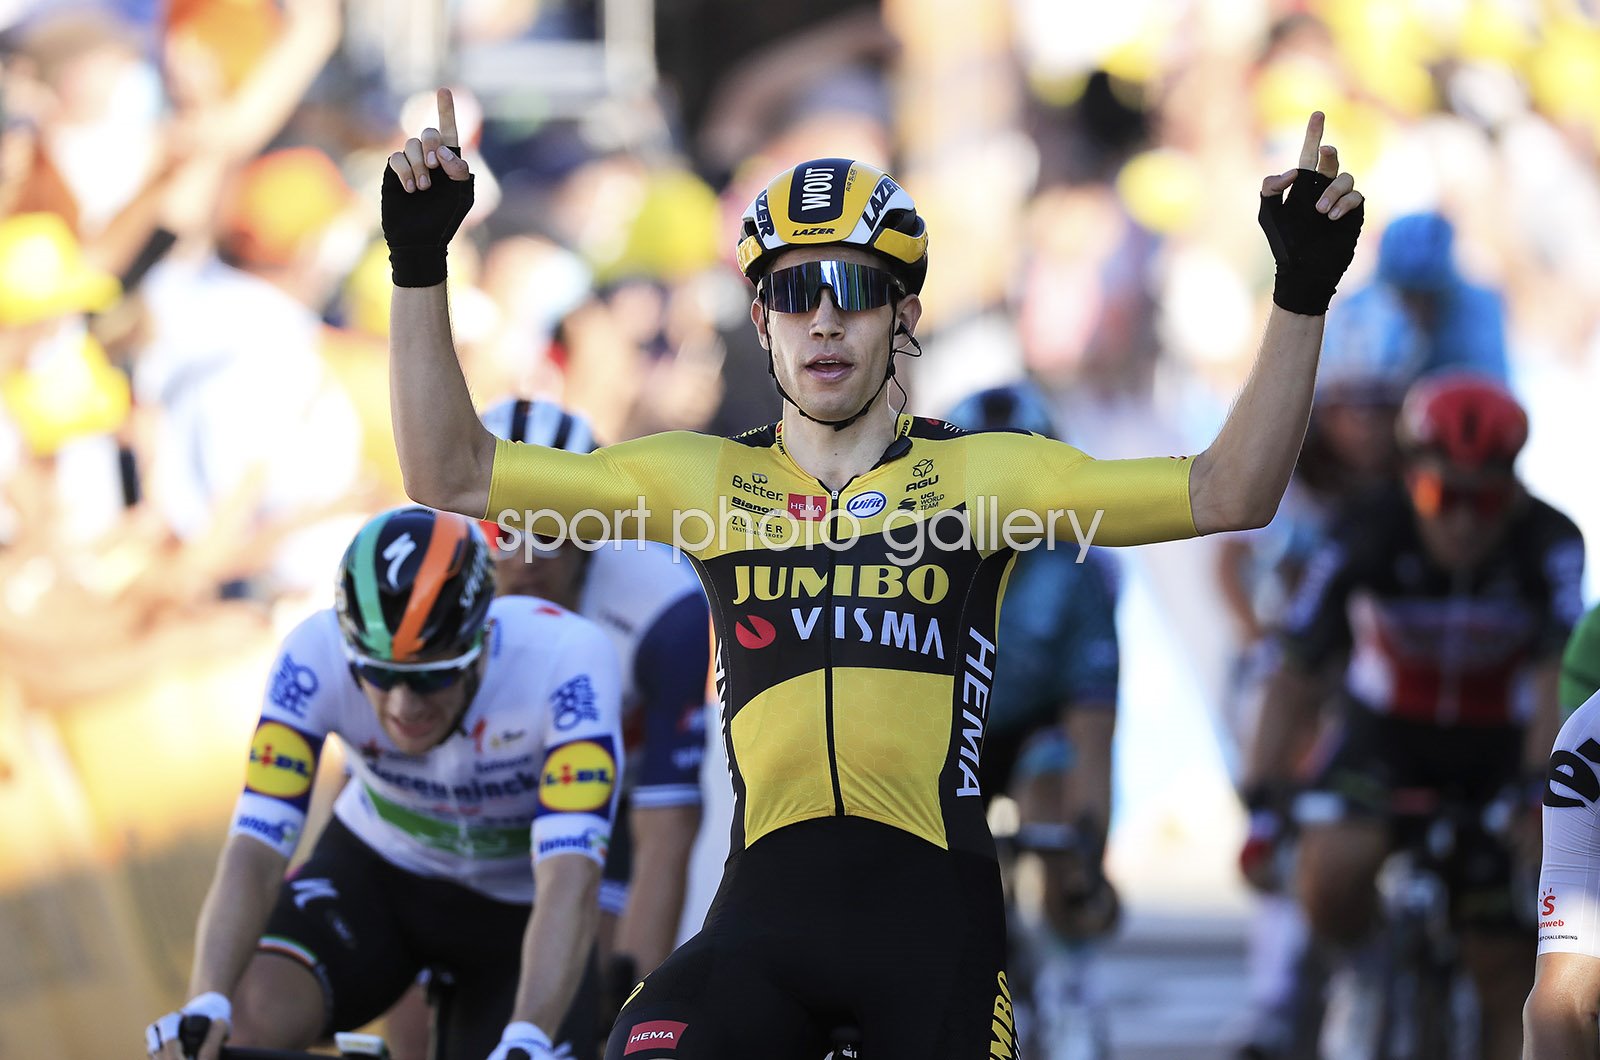 who won stage 5 tour de france